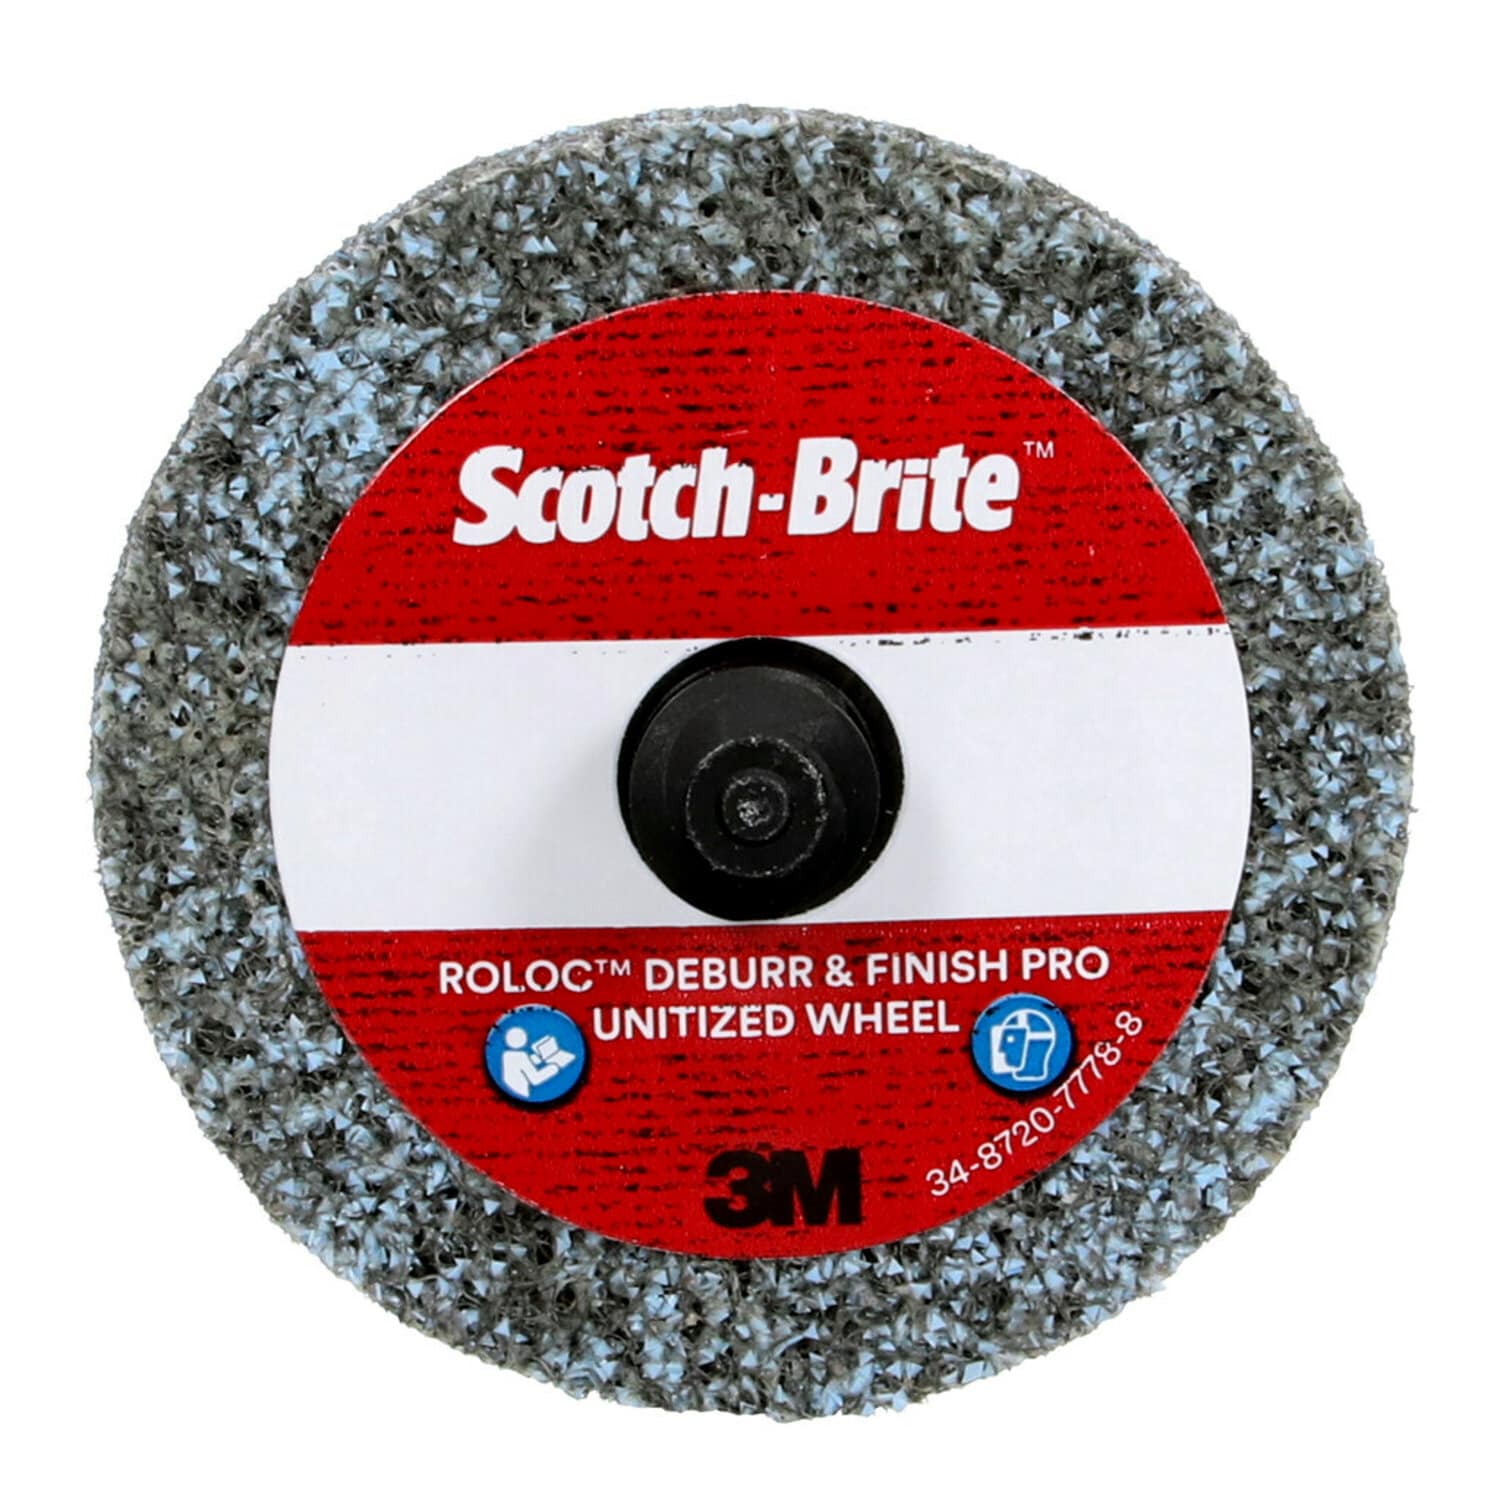 7100109131 - Scotch Brite Roloc Deburr & Finish PRO Unitized Wheel, DP-UR, 8C Coarse+, TR, 2 in x 1/4 in, 15/Carton, 60 ea/Case